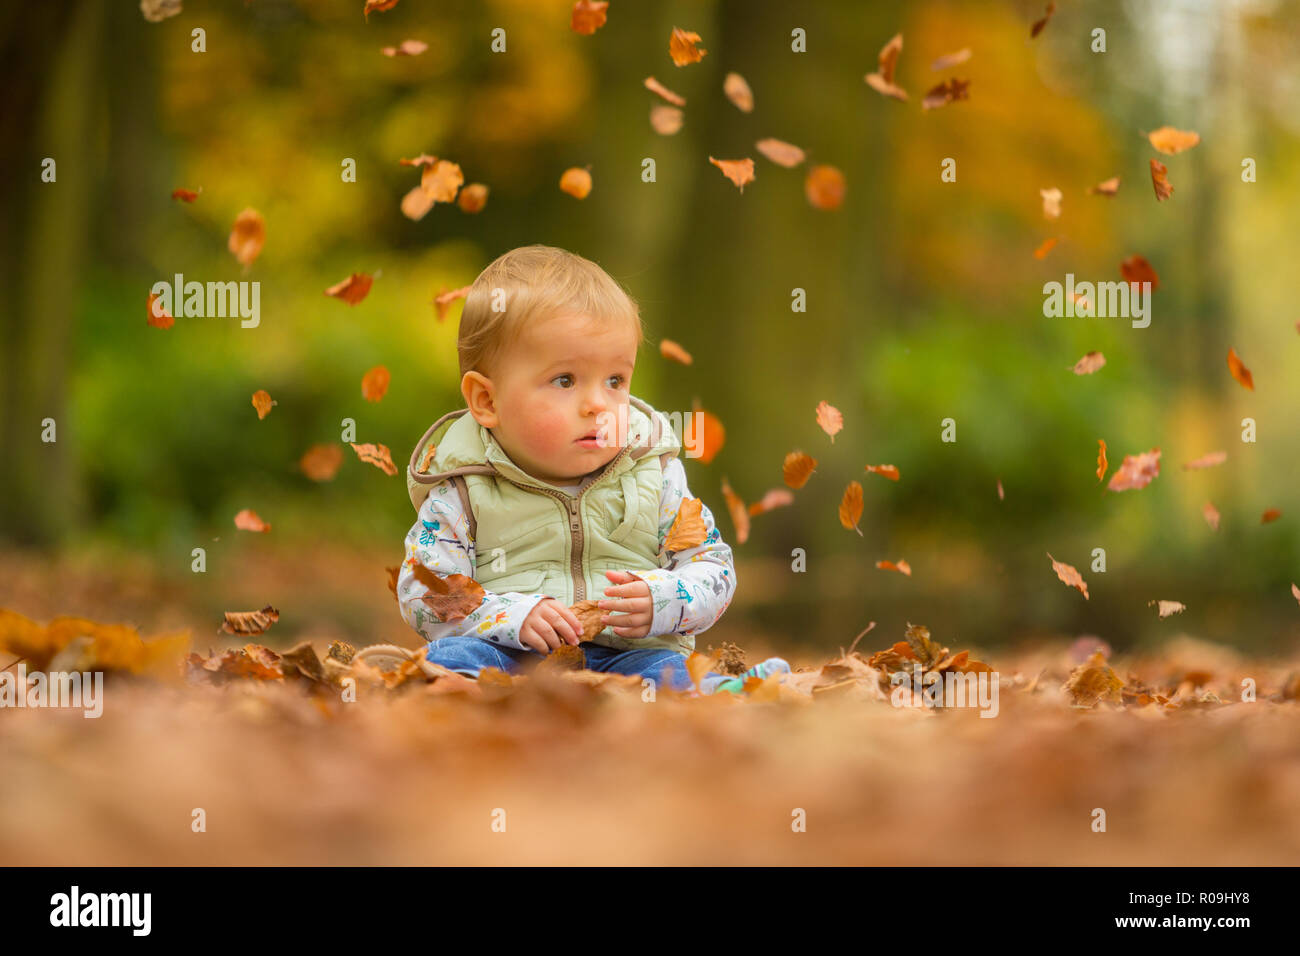 Niño de 18 meses blanco sentado en hojas de otoño con hojas caídas Foto de stock